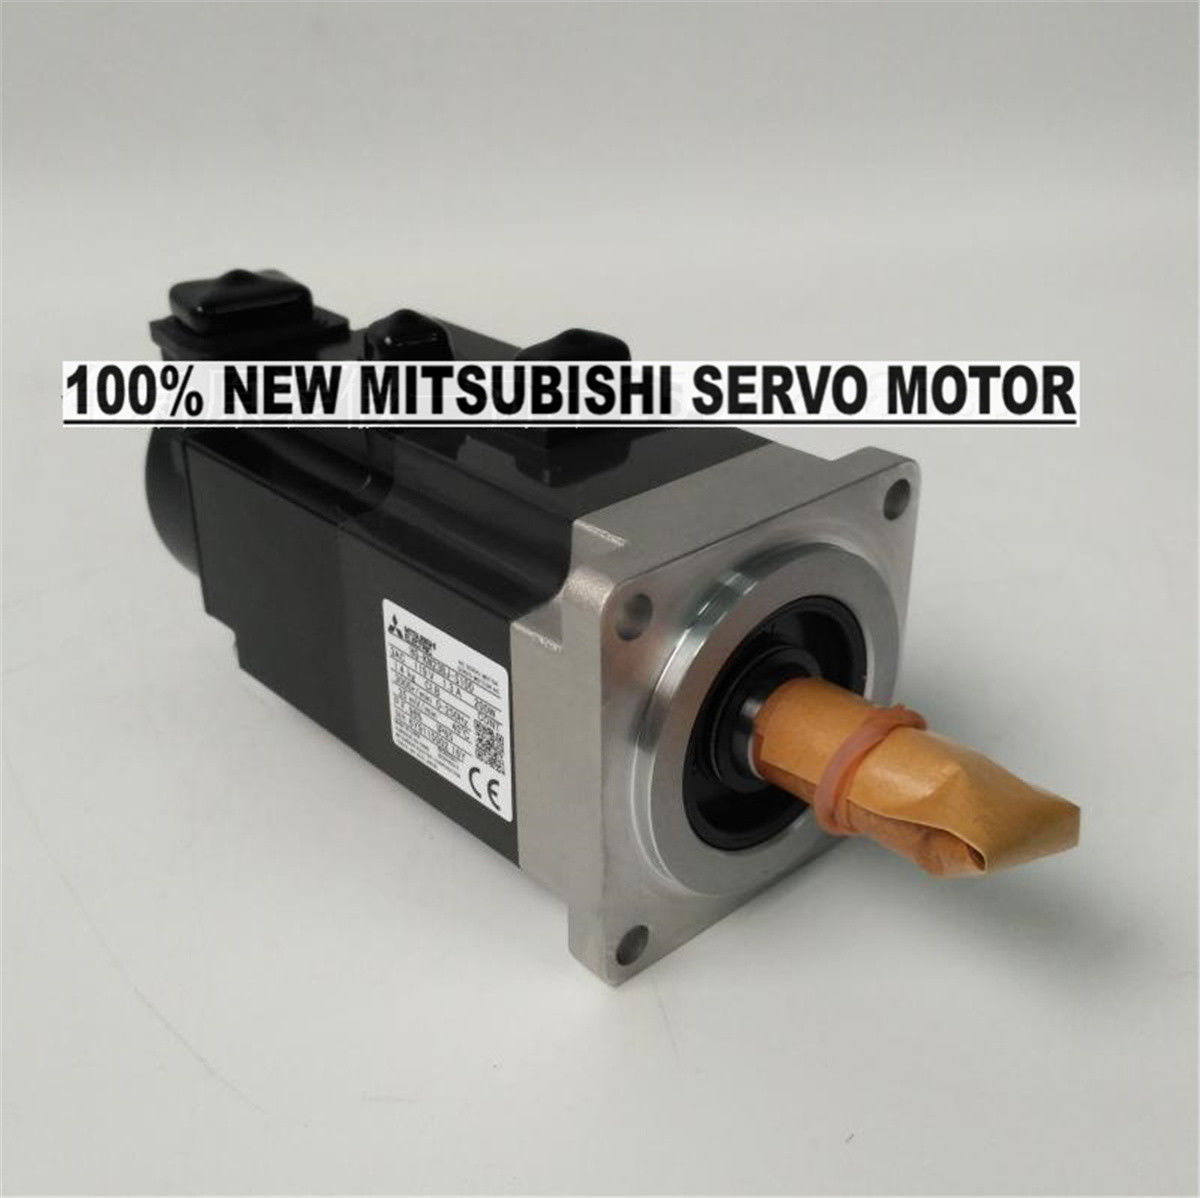 NEW Mitsubishi Servo Motor HG-KN23BJ-S100 in box HGKN23BJS100 - zum Schließen ins Bild klicken